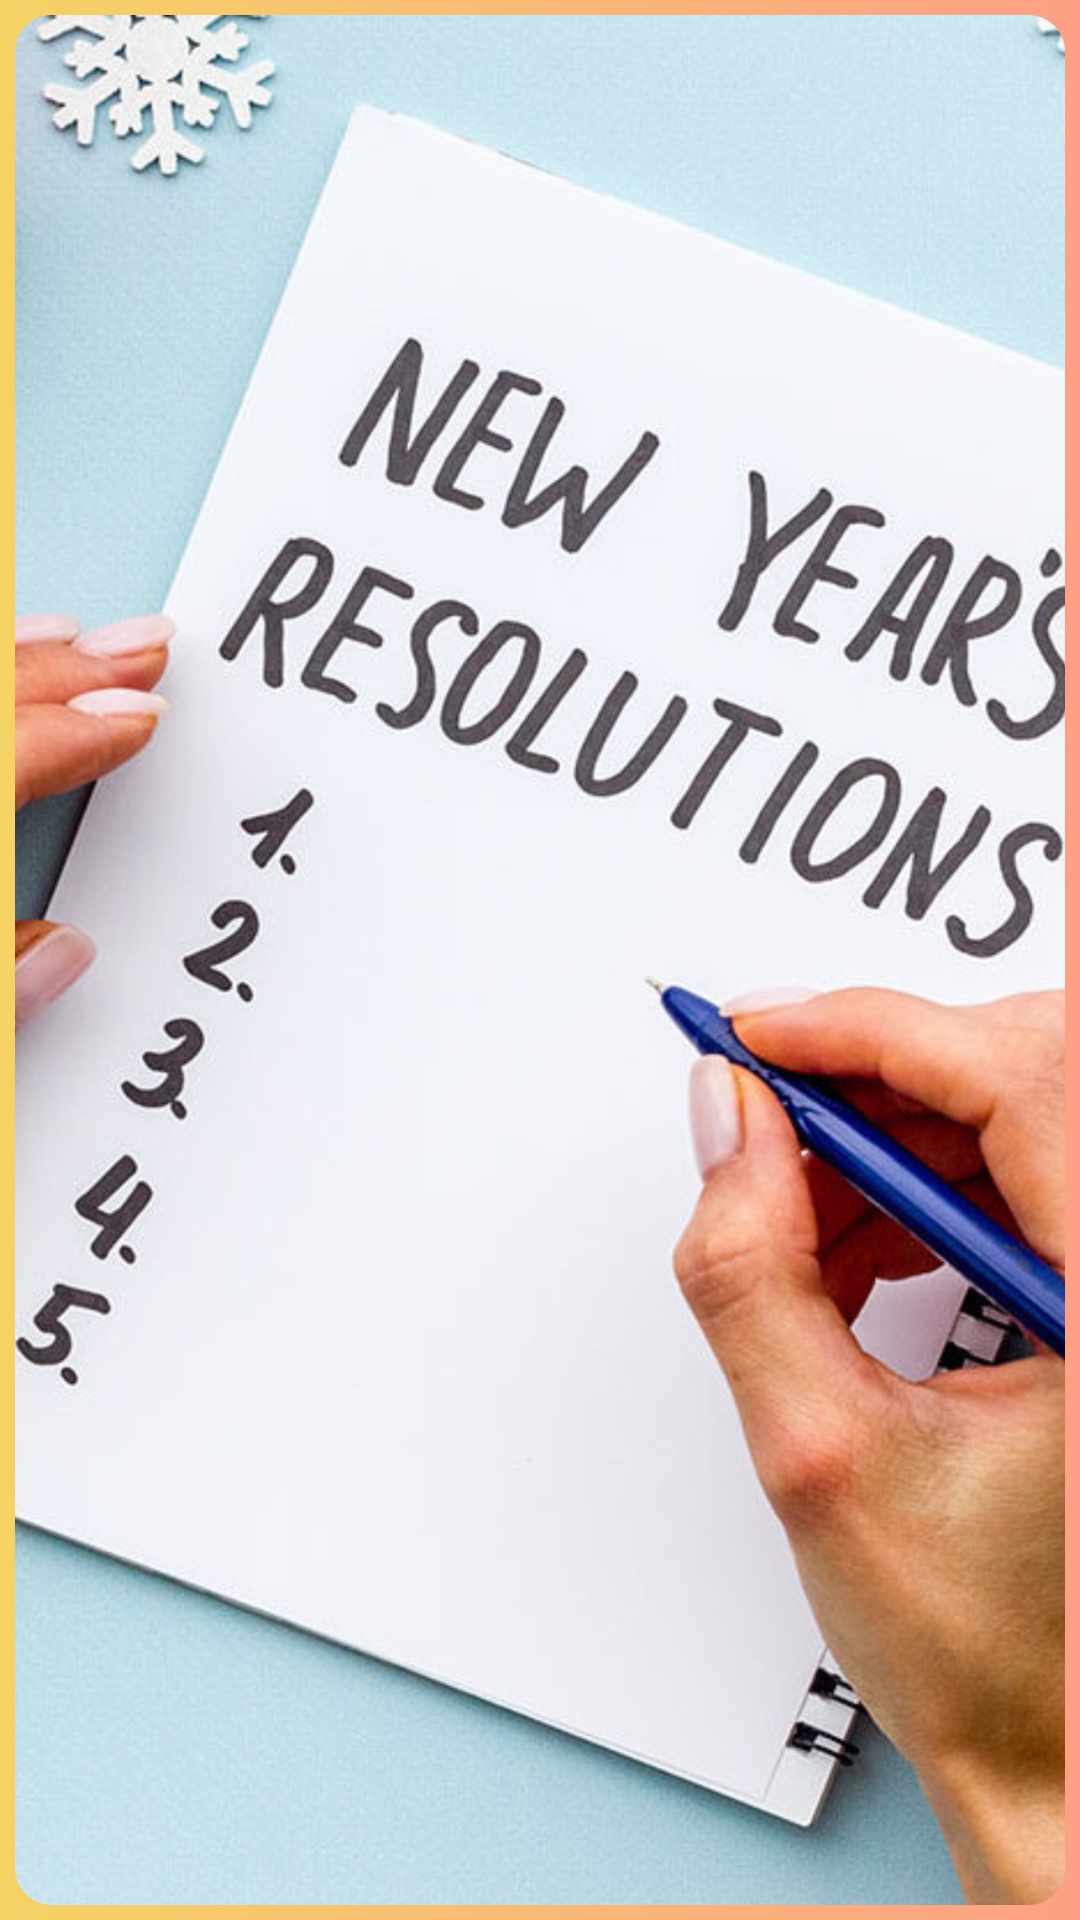 1 जनवरी से जिंदगी बदल जाएगी, बस इन्हें बना लें अपना New Year Resolutions